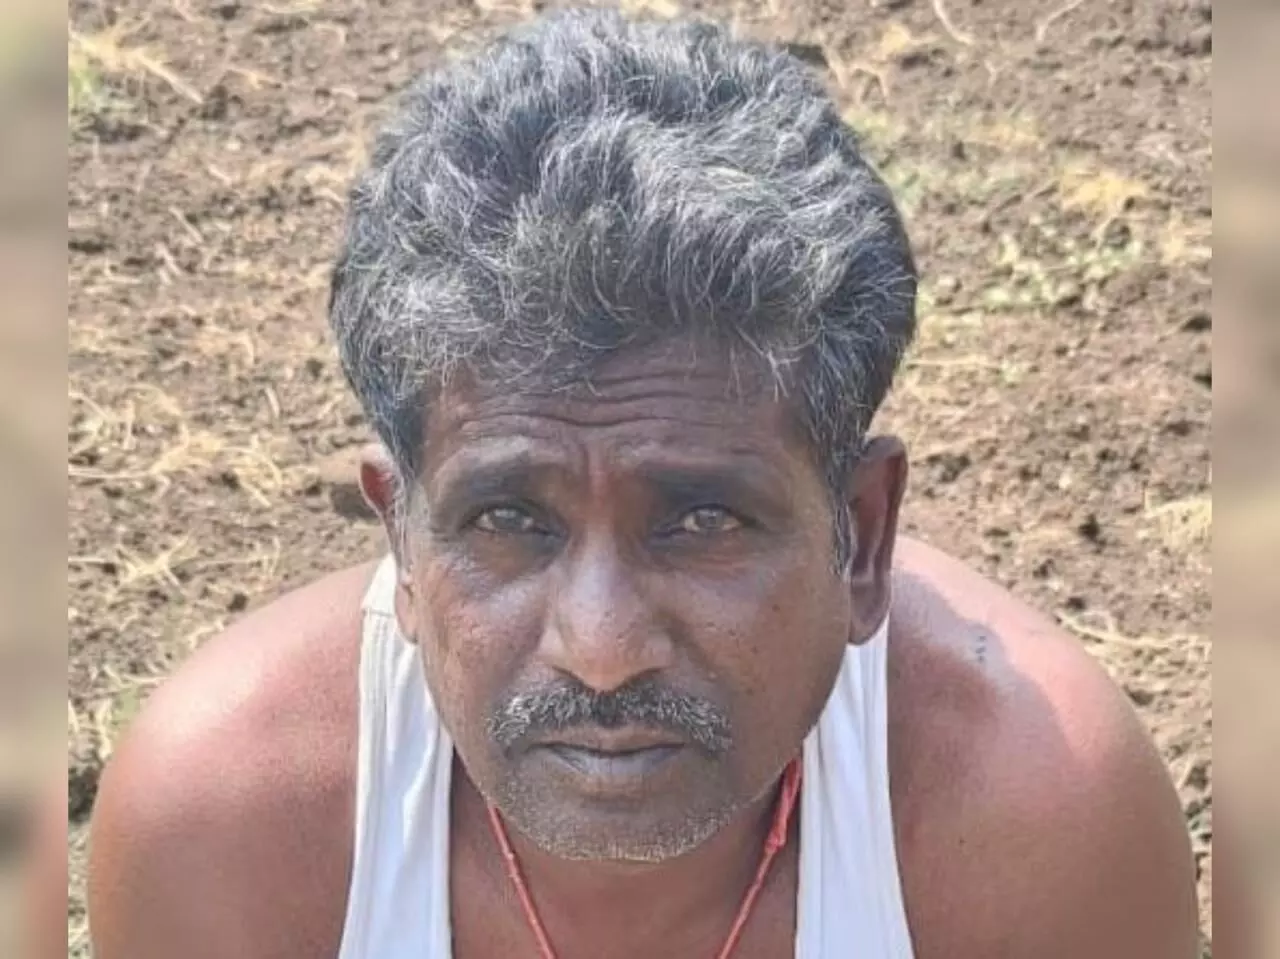 Farmer growing ganja in farm fields at Shankarpalli arrested